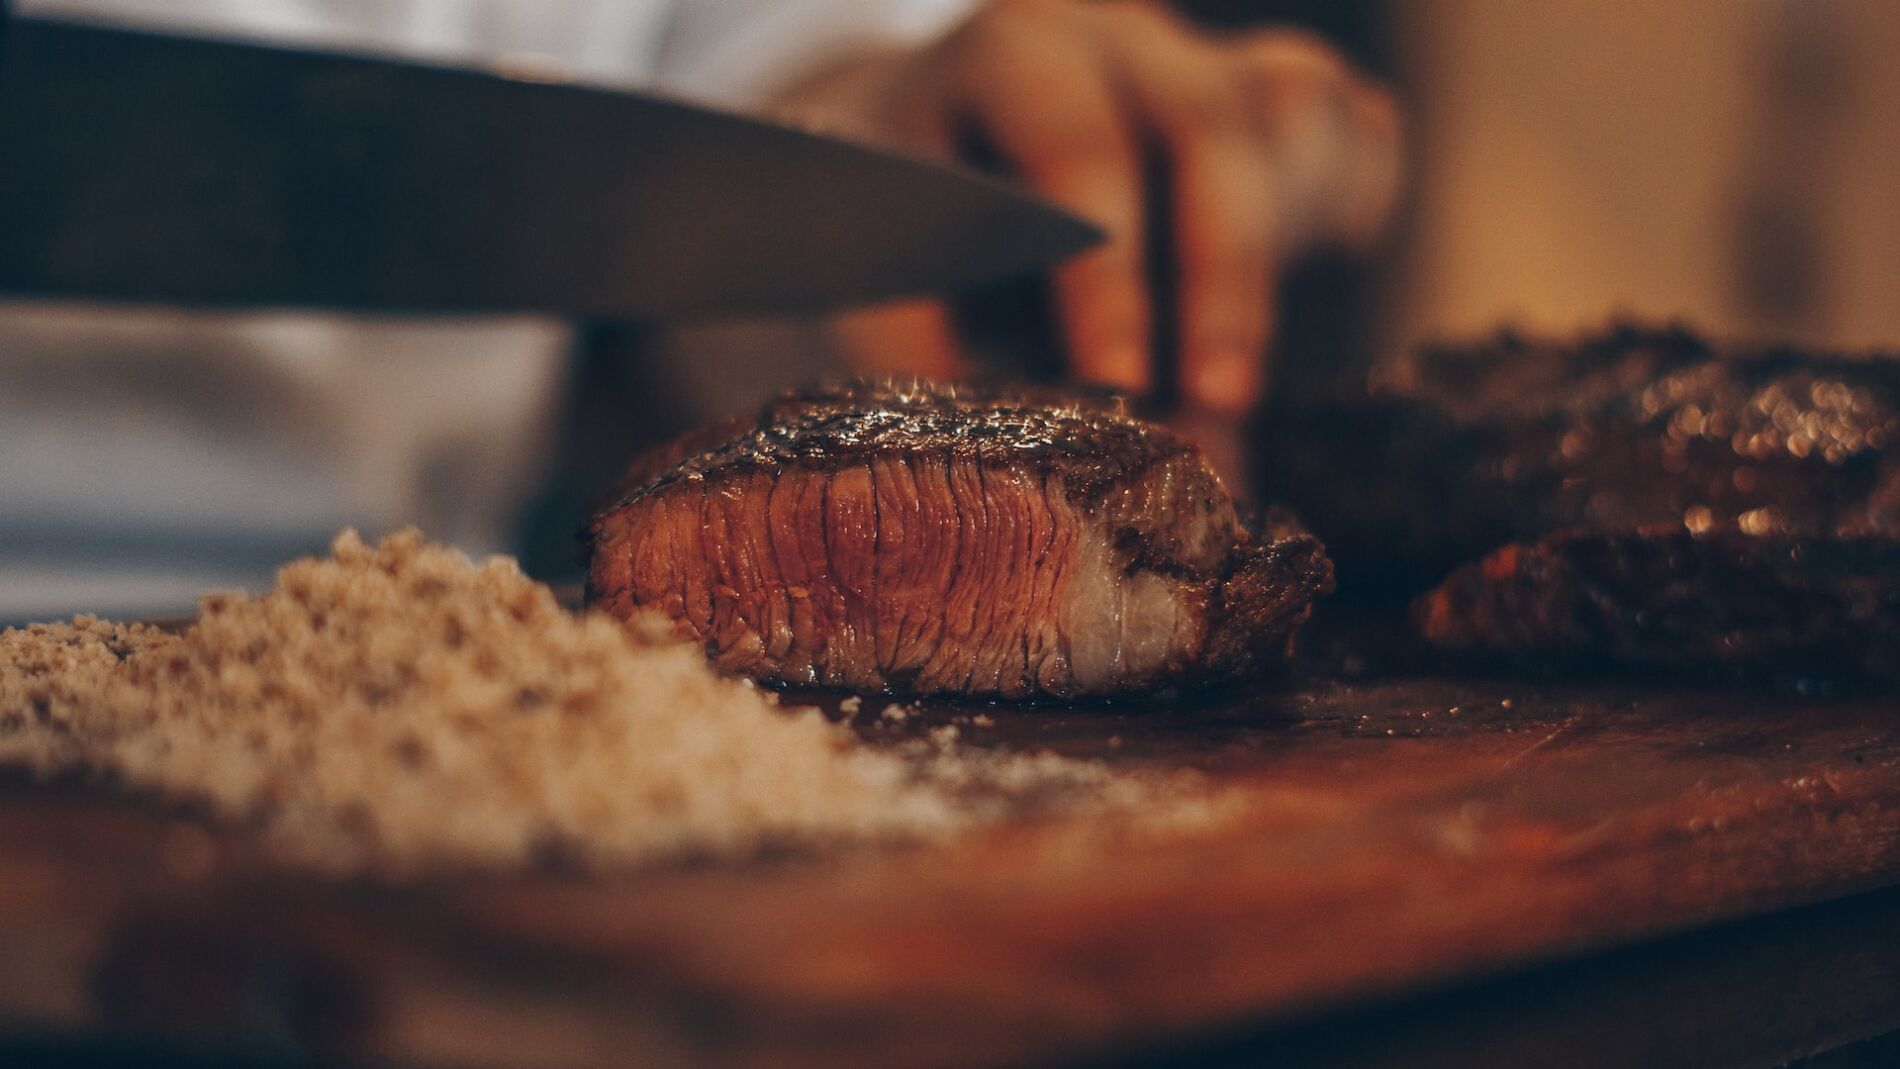 Steak being cut